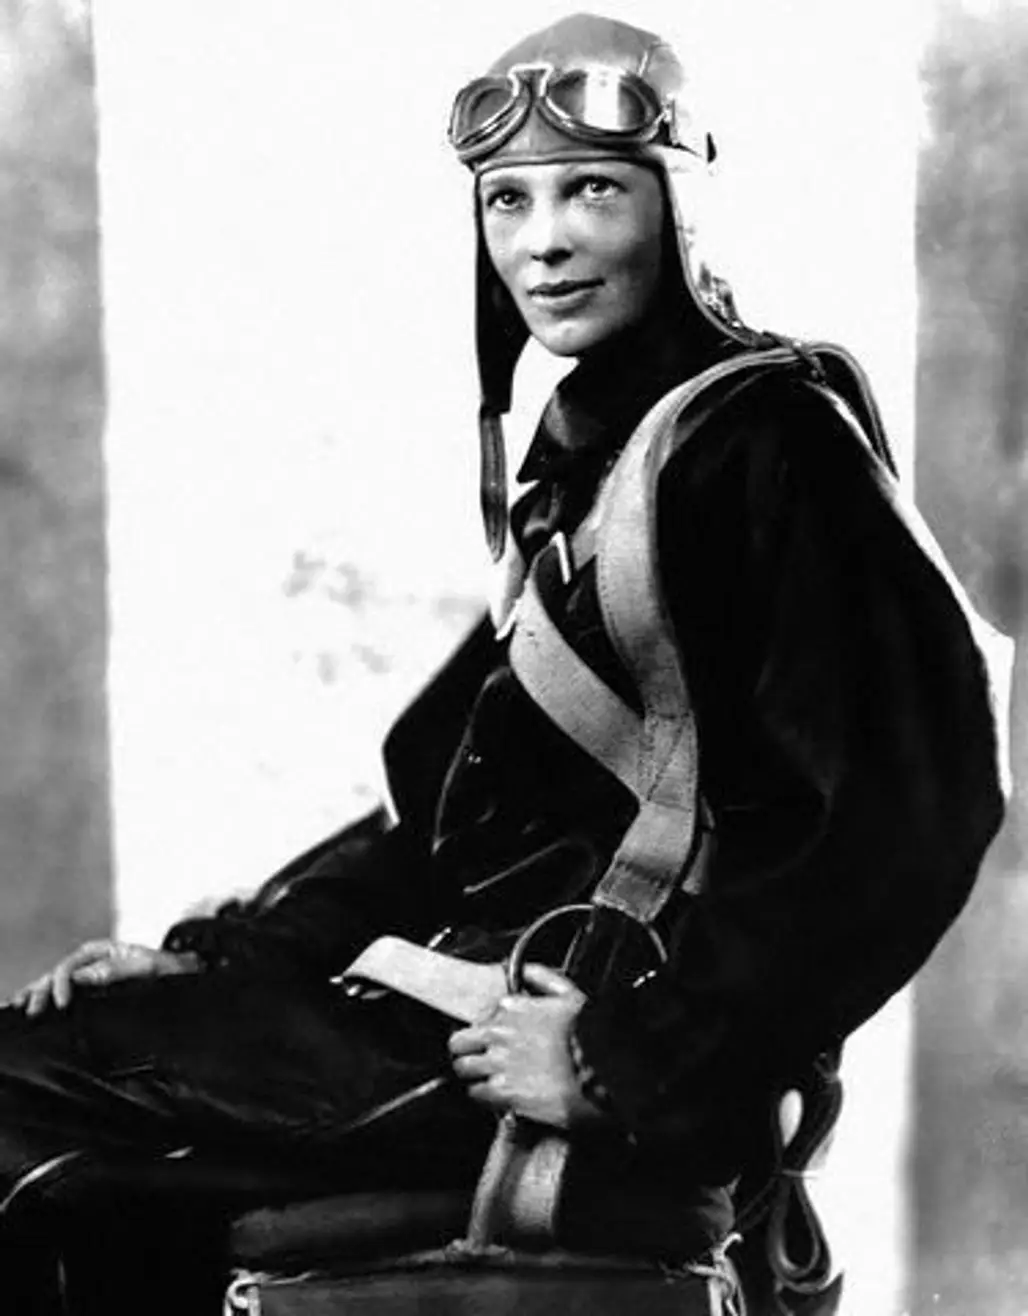 Amelia Earhart, 1897 – 1937